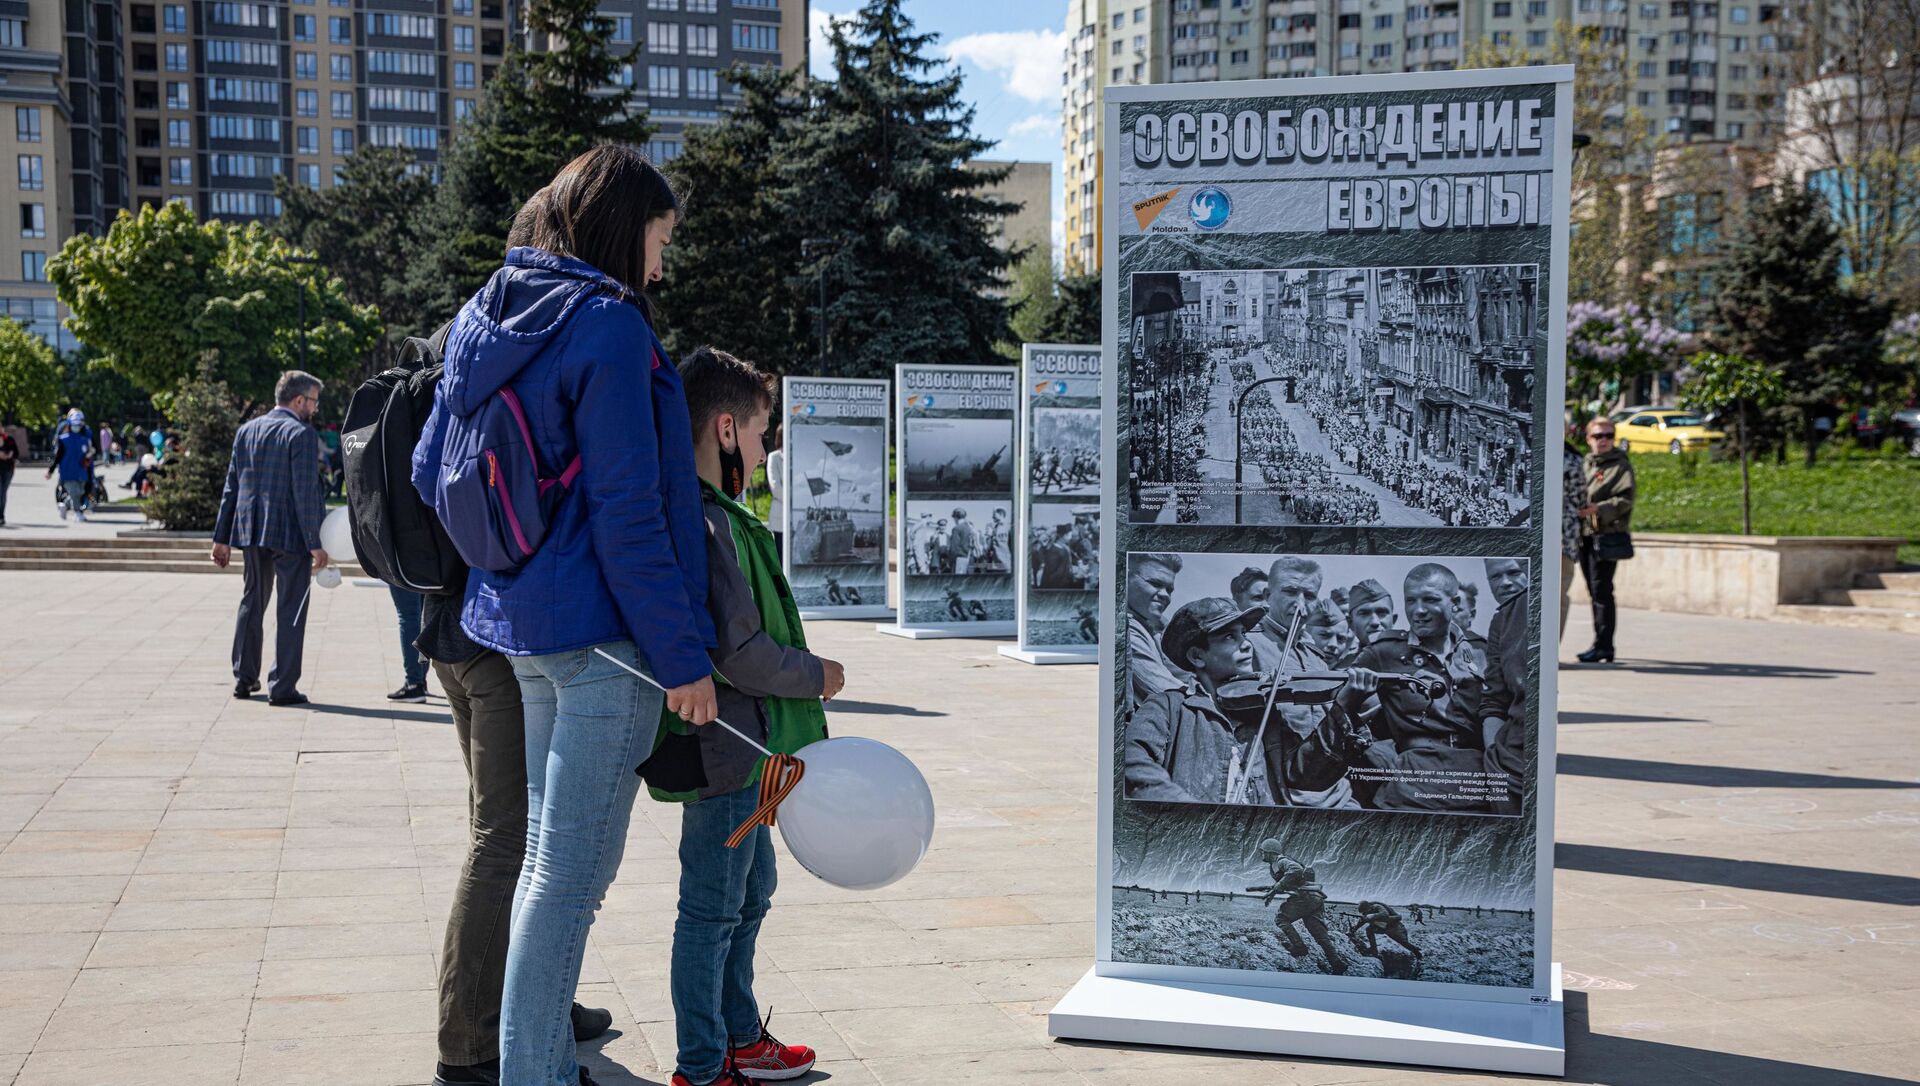 Фотовыставка Освобождение Европы в Кишиневе - Sputnik Молдова, 1920, 09.05.2021